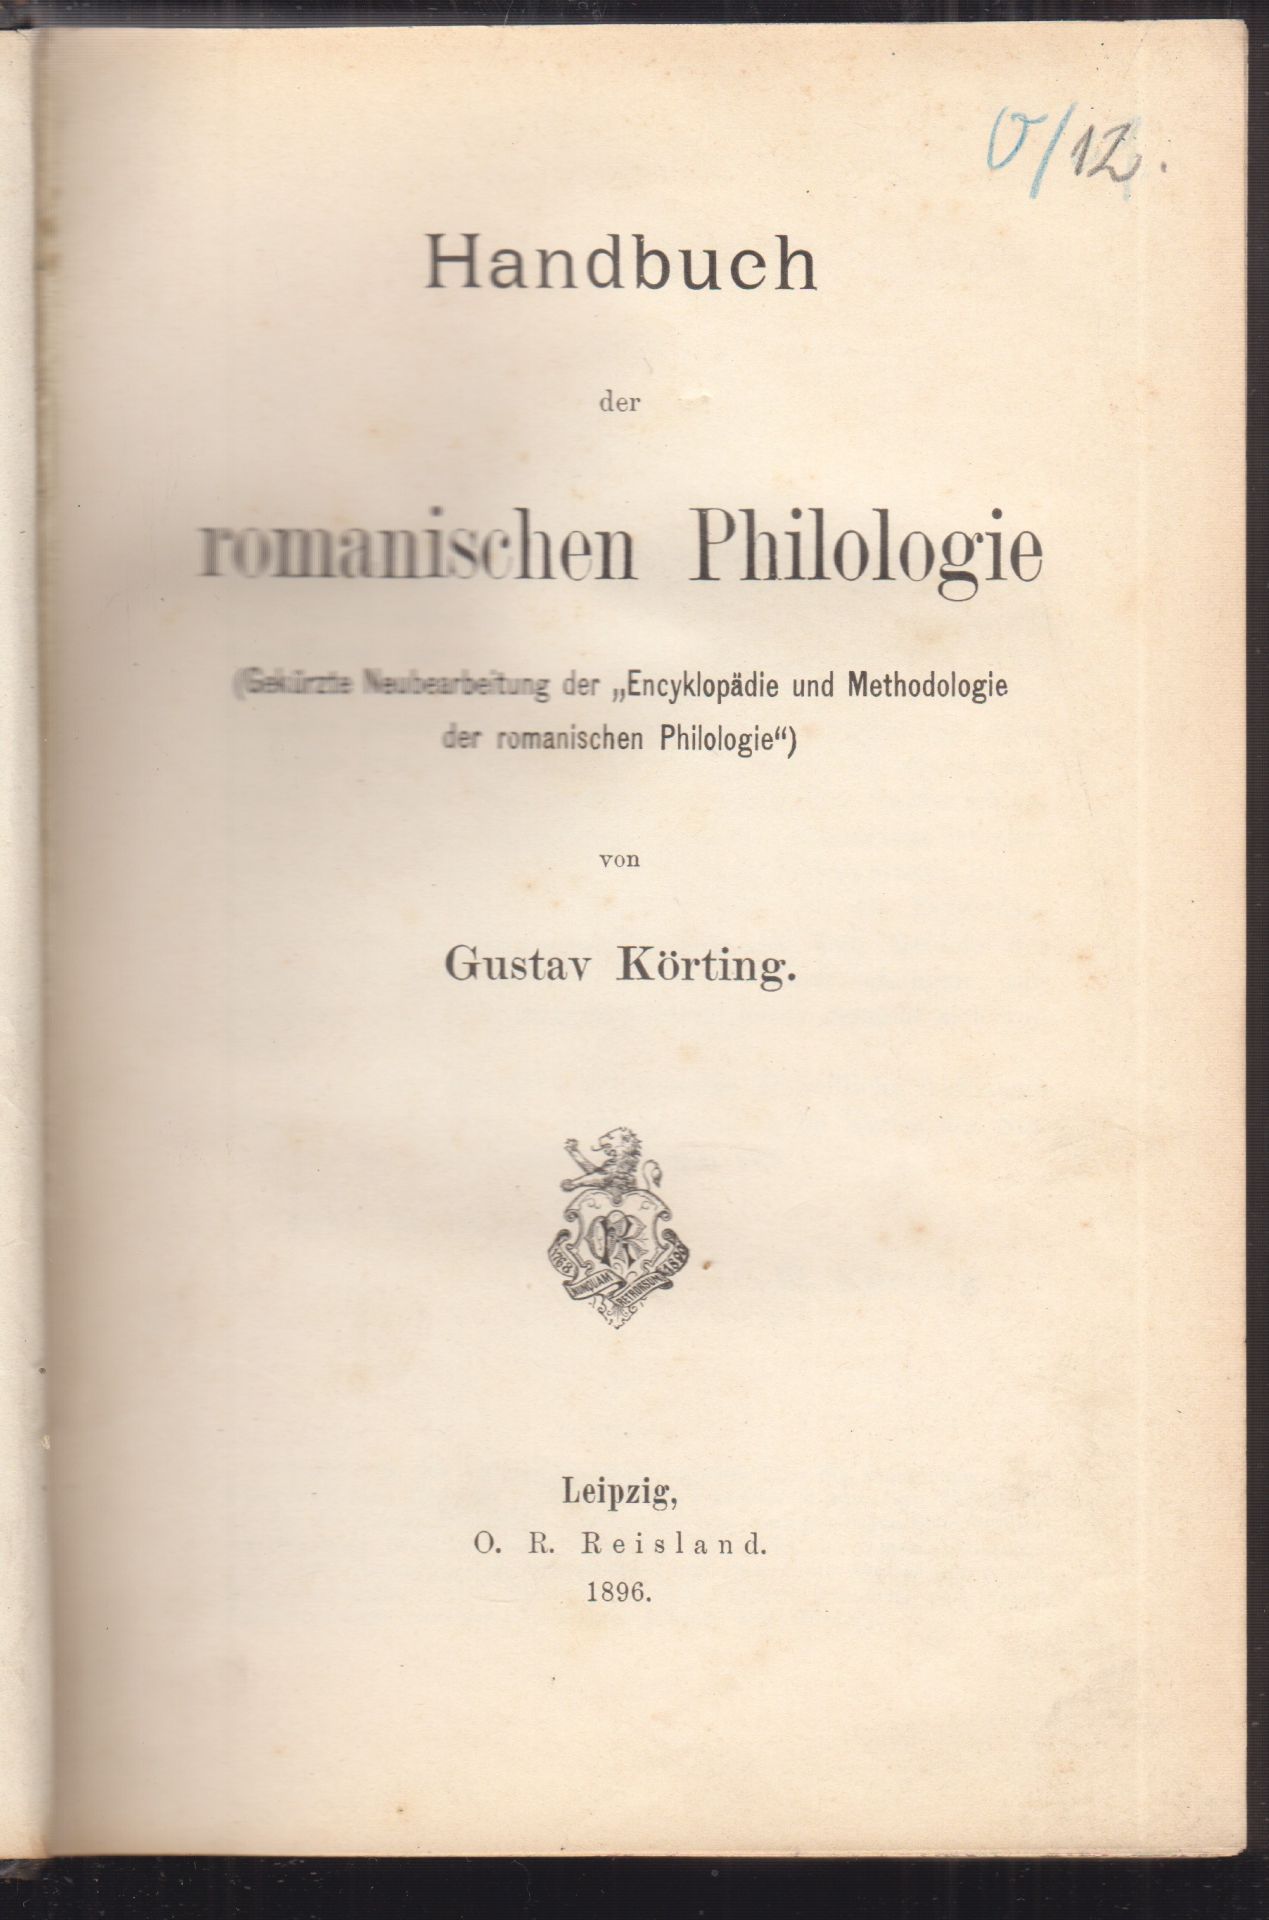 KRTING, Gustav. Handbuch der romanischen Philologie (Gekrzte Neubearbeitung der `Encyklopdie und Methodologie der romanischen Philologie`).